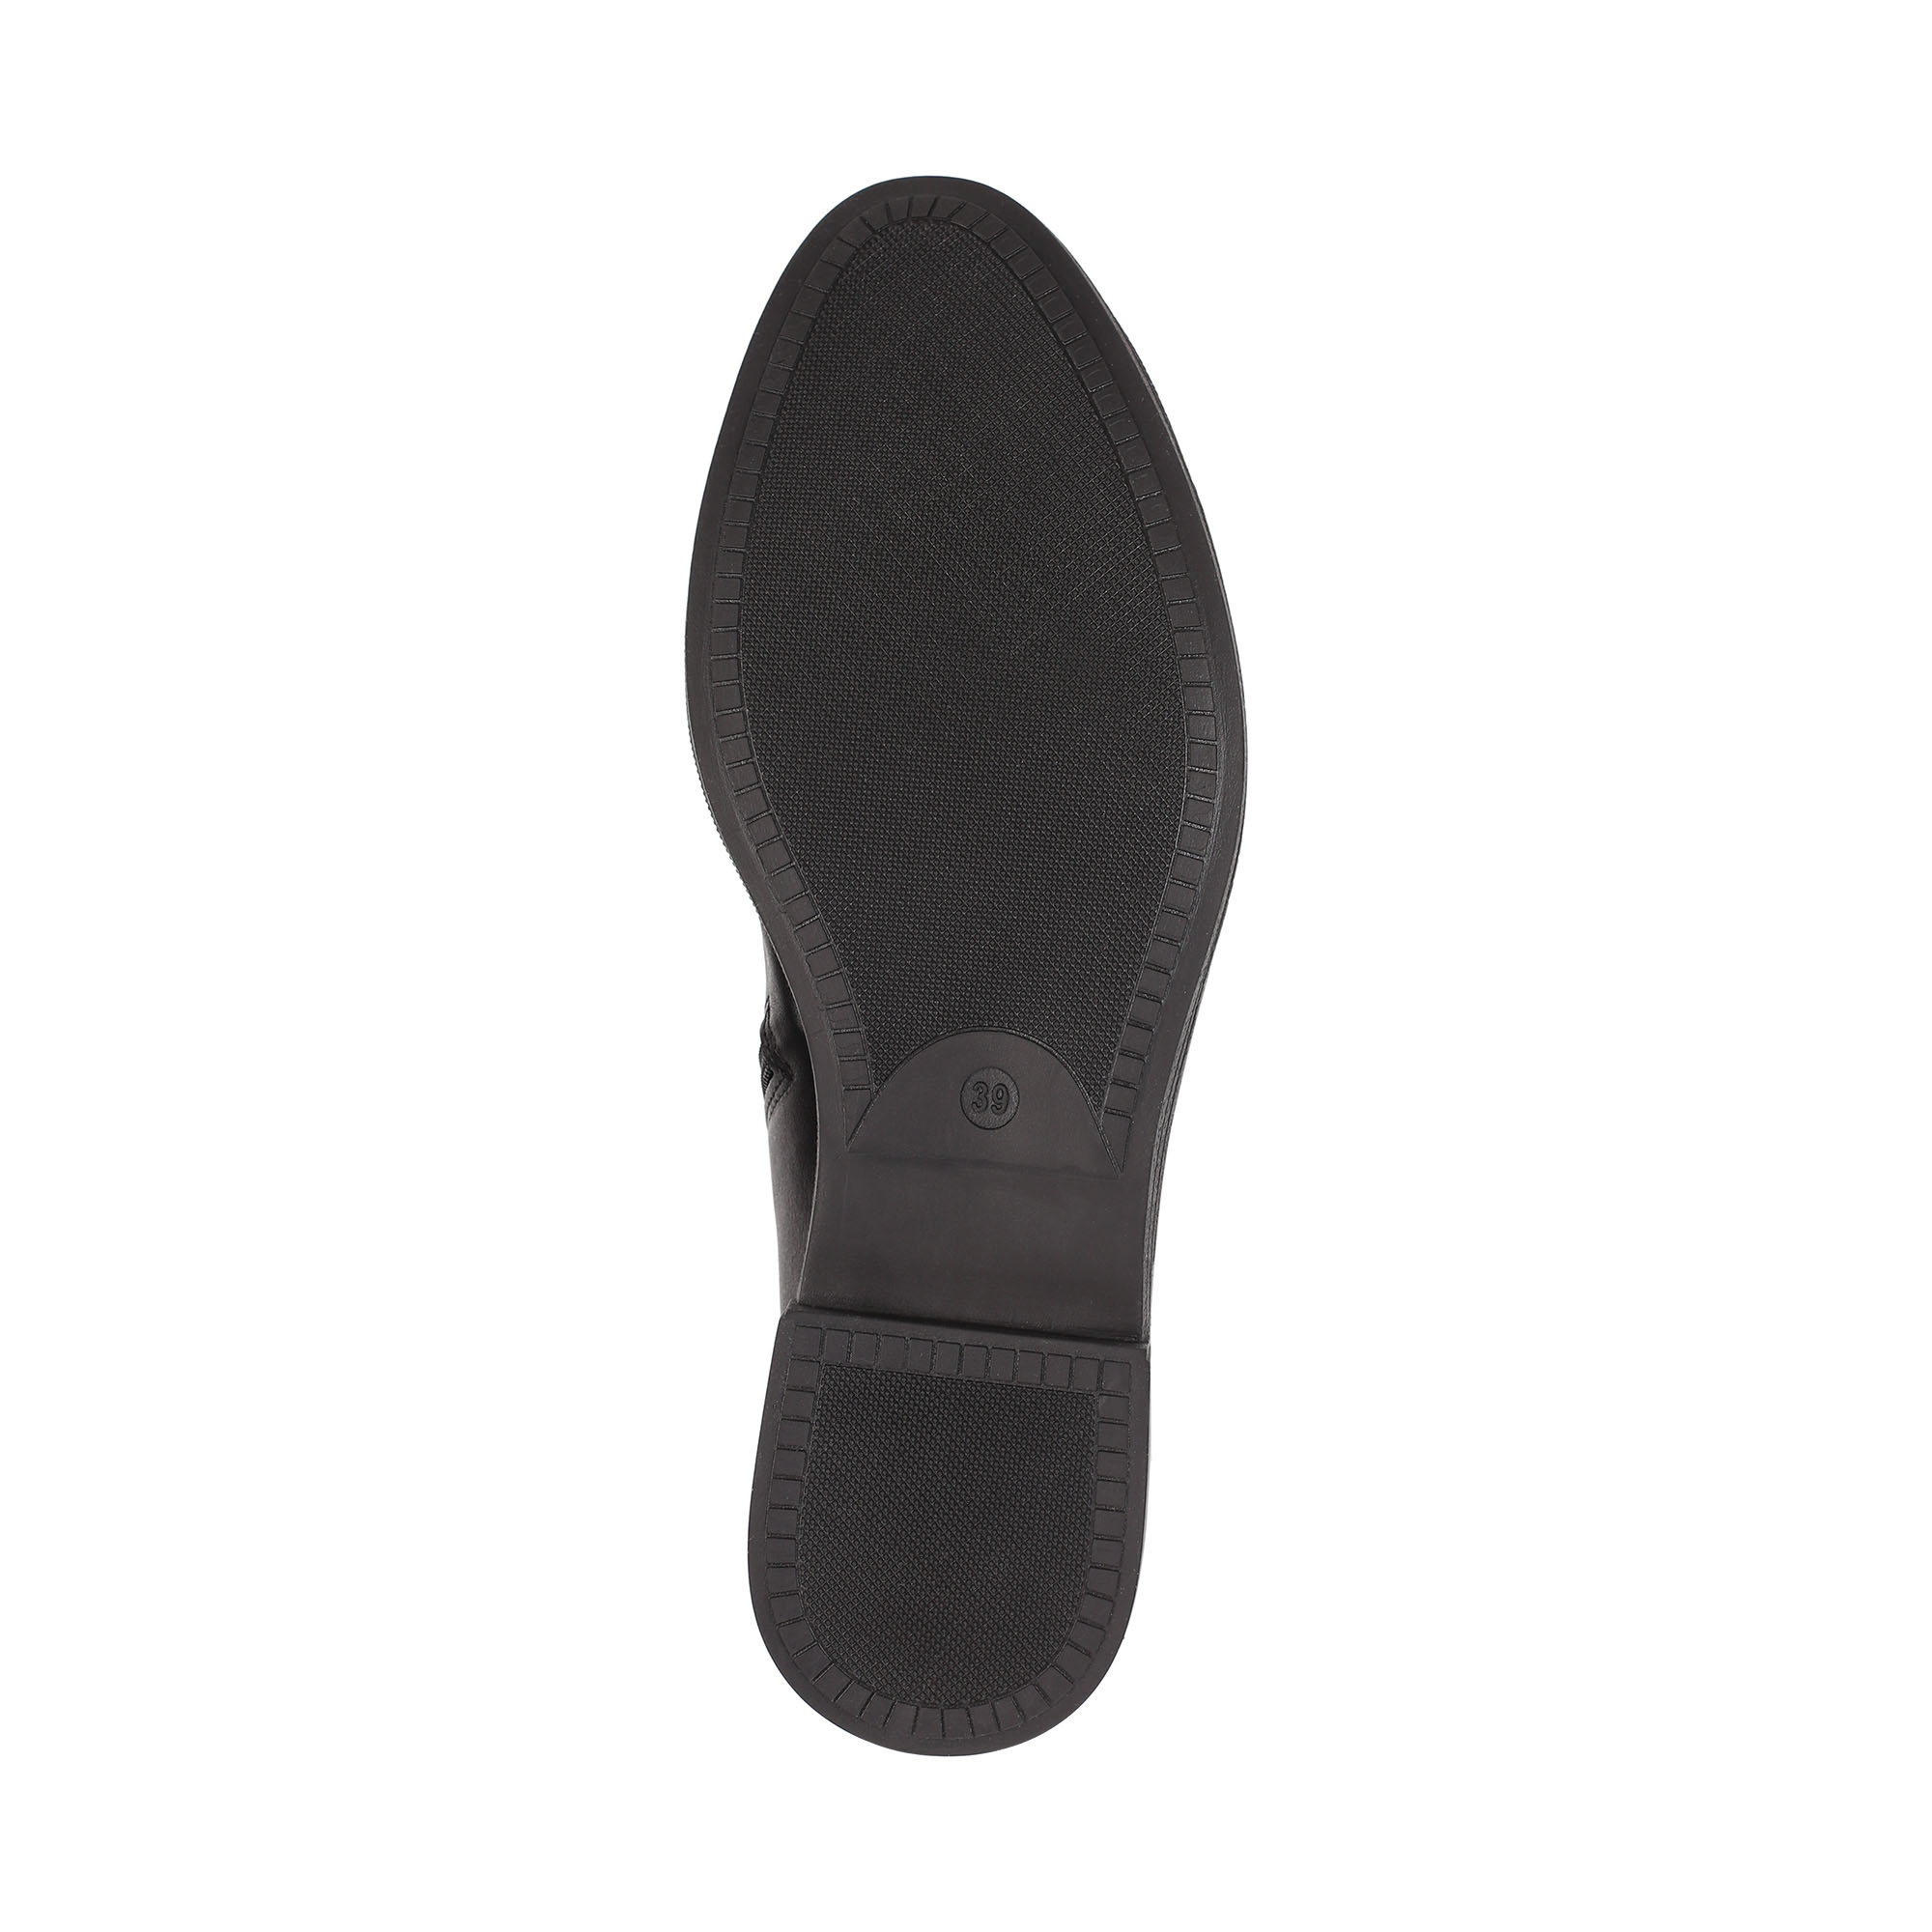 Ботинки Thomas Munz 539-014A-2102, цвет черный, размер 39 - фото 4